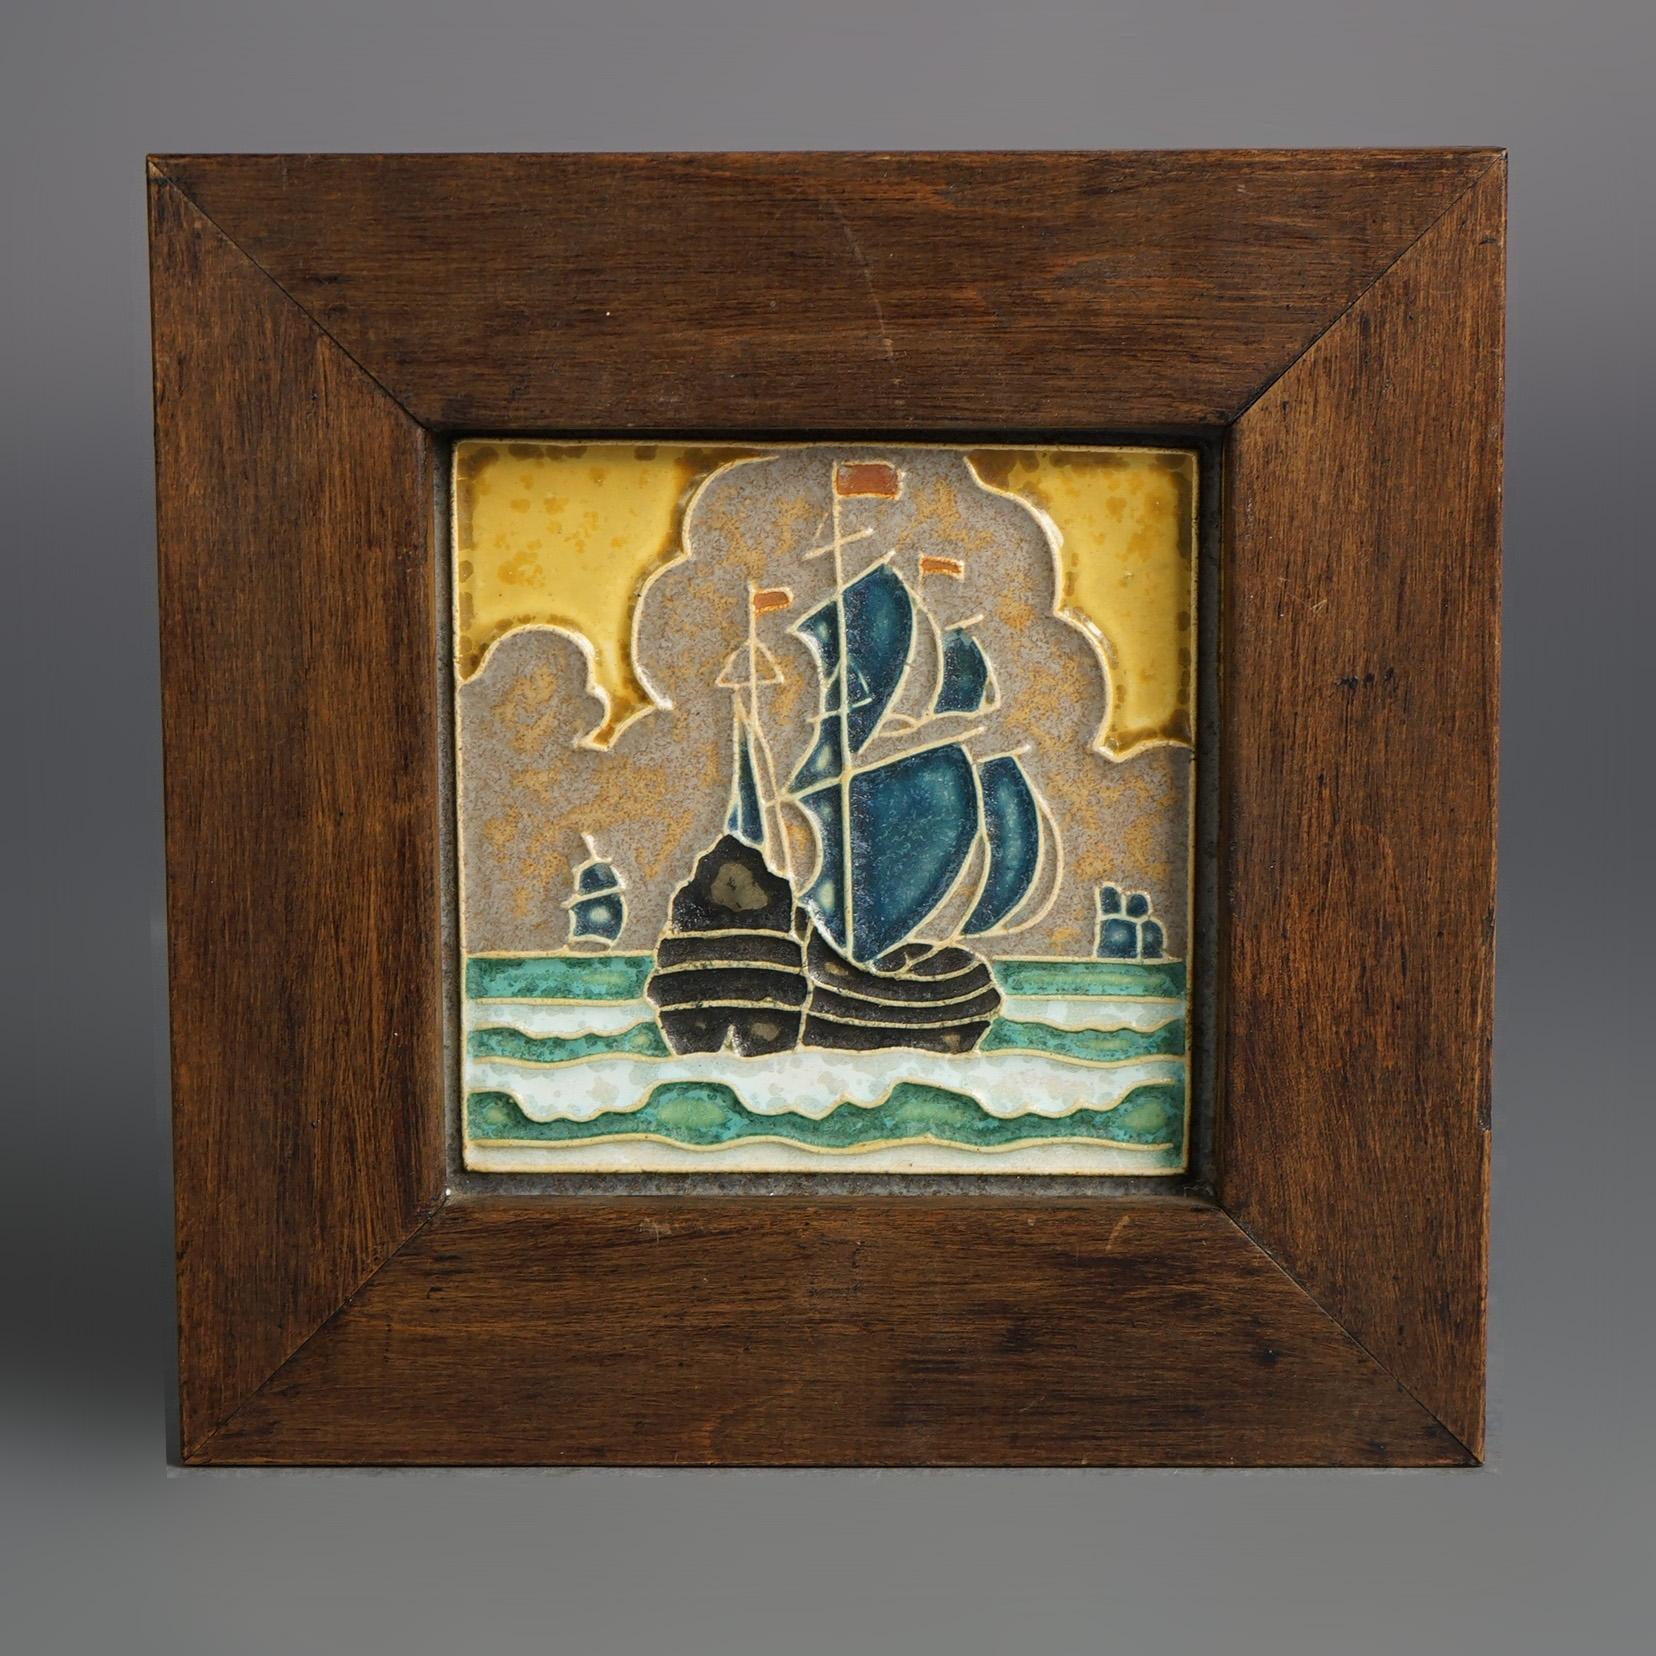 Antike Delft Arts & Crafts gerahmte Keramik Fliese, Seelandschaft & Tall Mast Schiff, signiert & gerahmt, C1920

Maße: 7,5''H x 7,5''B x 0,75''D